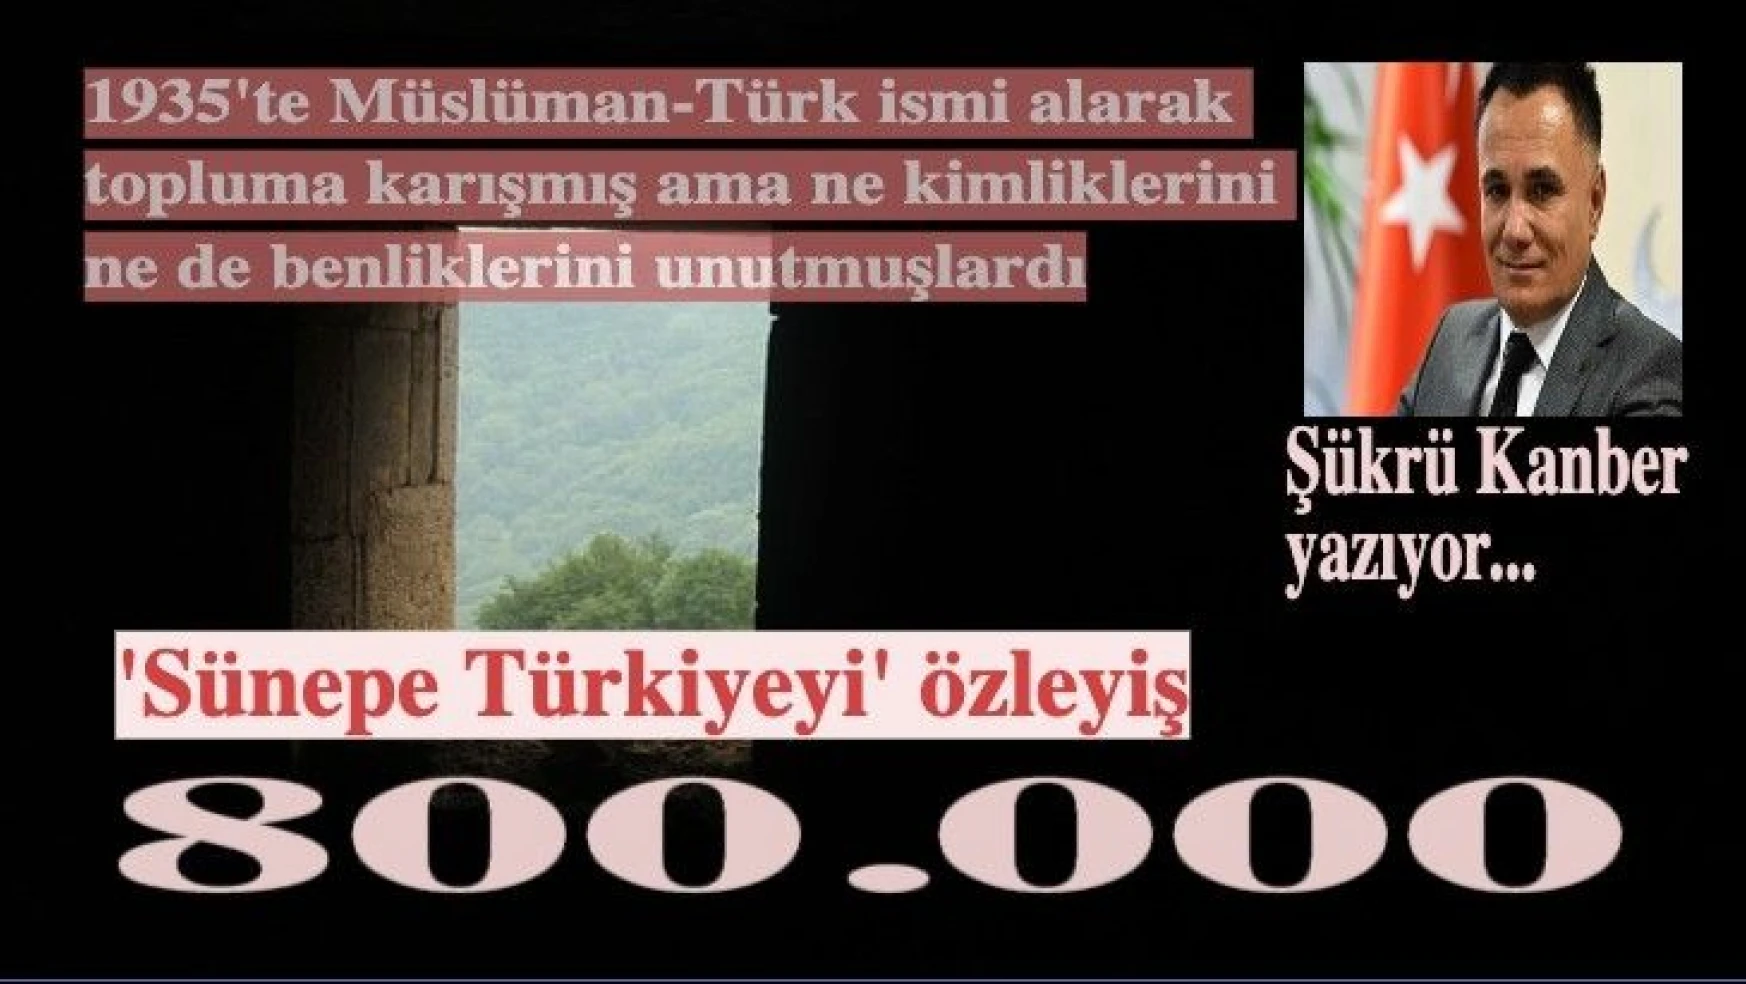 Müslüman-Türk isimli yerli-yabancı unsurlar ve 'Sünepe Türkiye'yi özleyiş